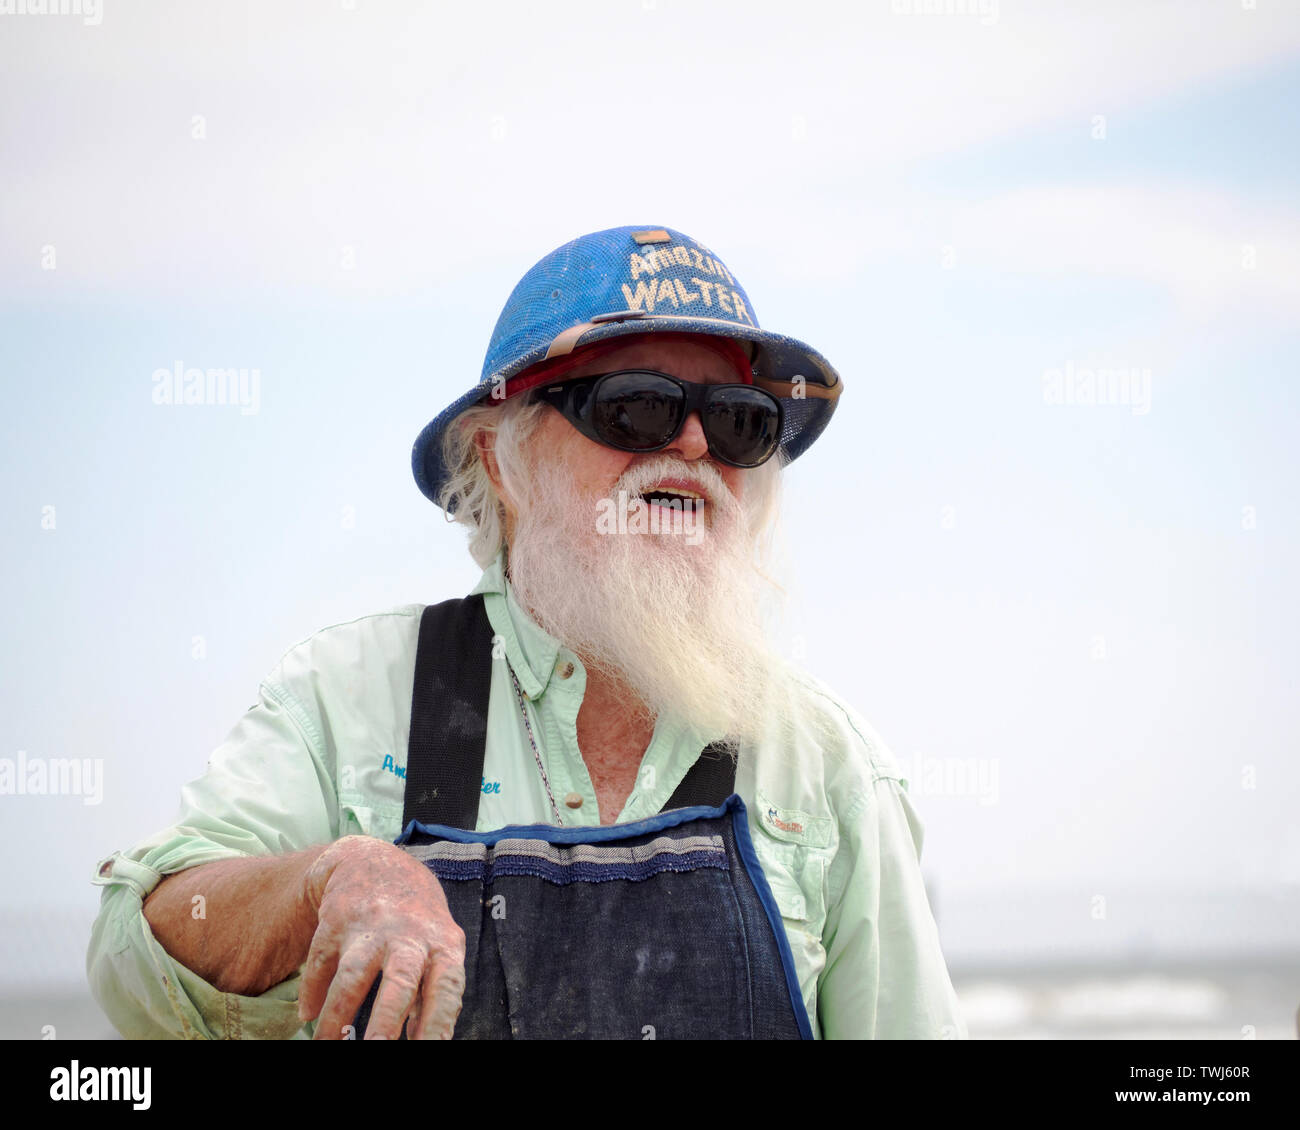 Barbe blanche Amazin', 'Walter' McDonald dans un pith helmet prend une pause à partir de la sculpture à la Texas 2019 Sandfest à Port Aransas, Texas USA. Banque D'Images